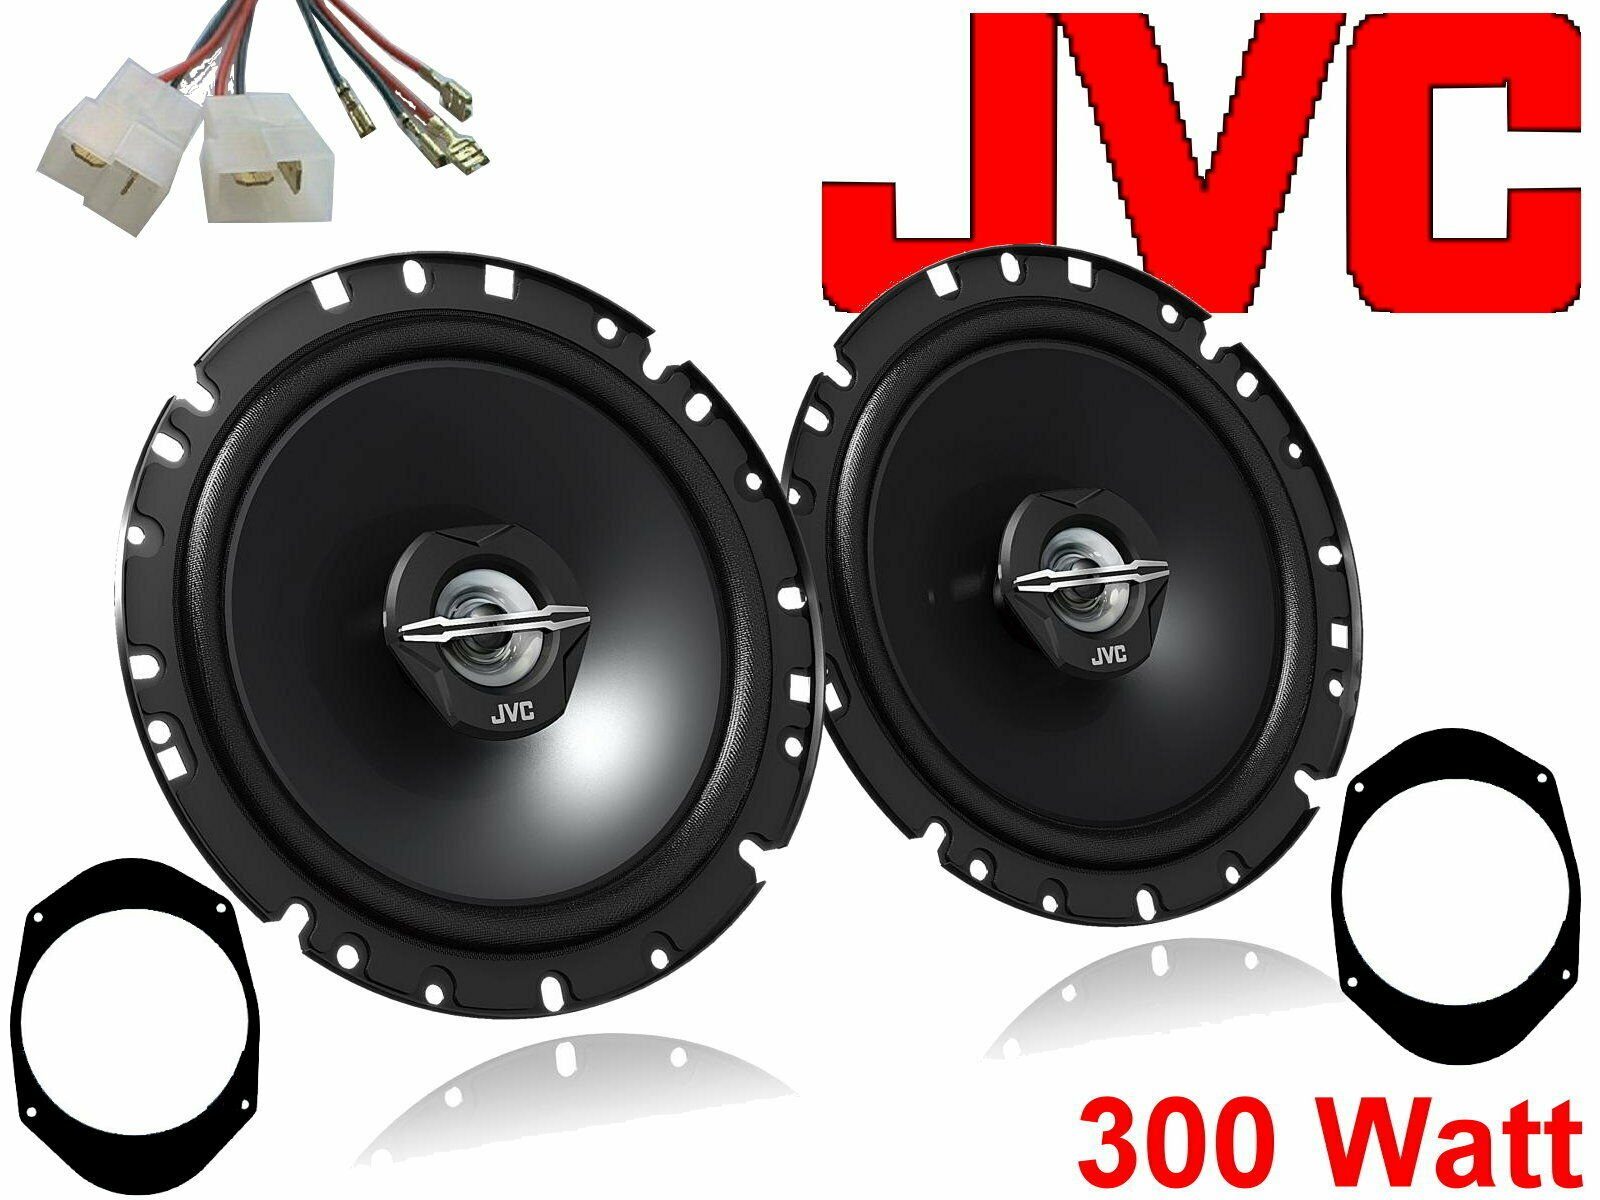 DSX JVC 300 W passend für Ford Focus 98-04 Lautspreche Auto-Lautsprecher (30 W)